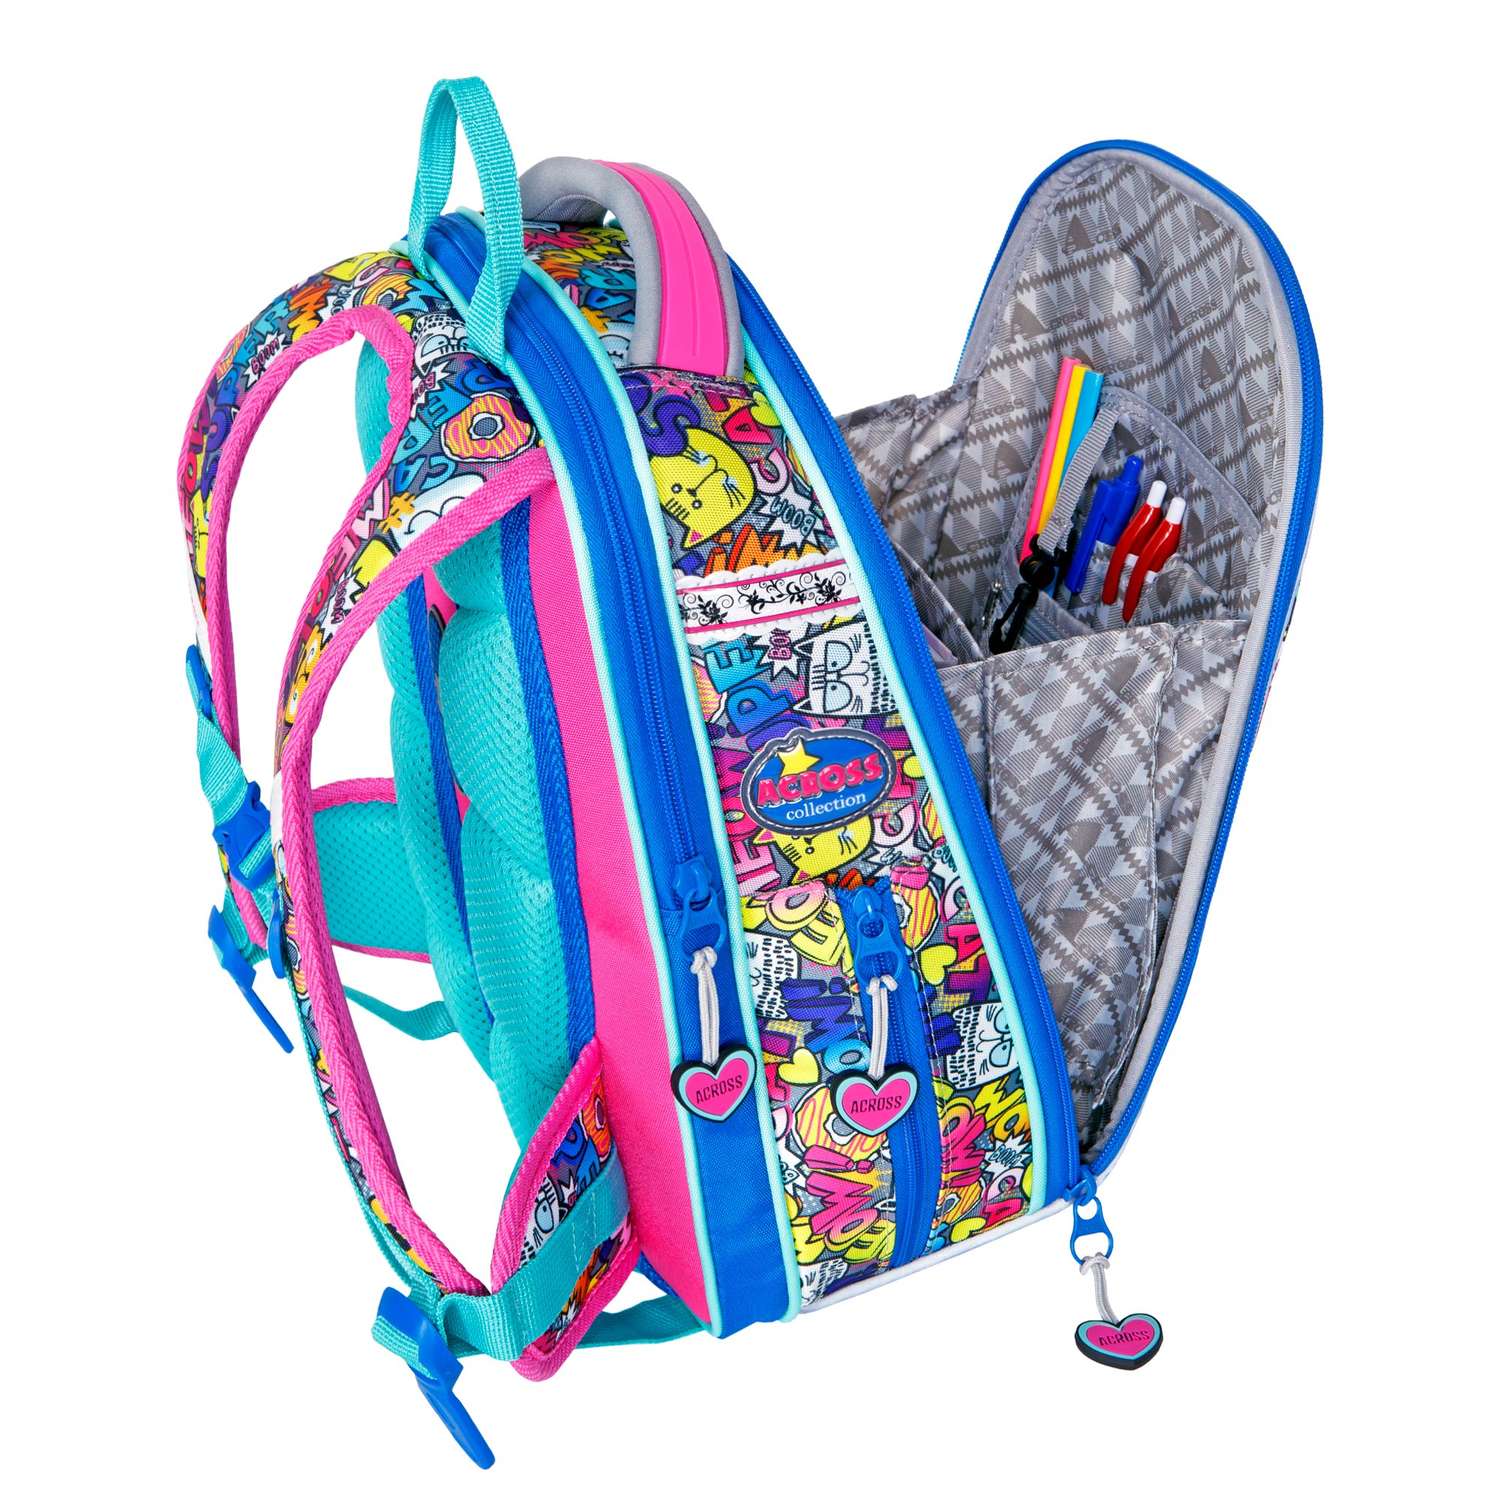 Рюкзак школьный ACROSS с наполнением: мешок для обуви пенал папка и брелок - фото 5